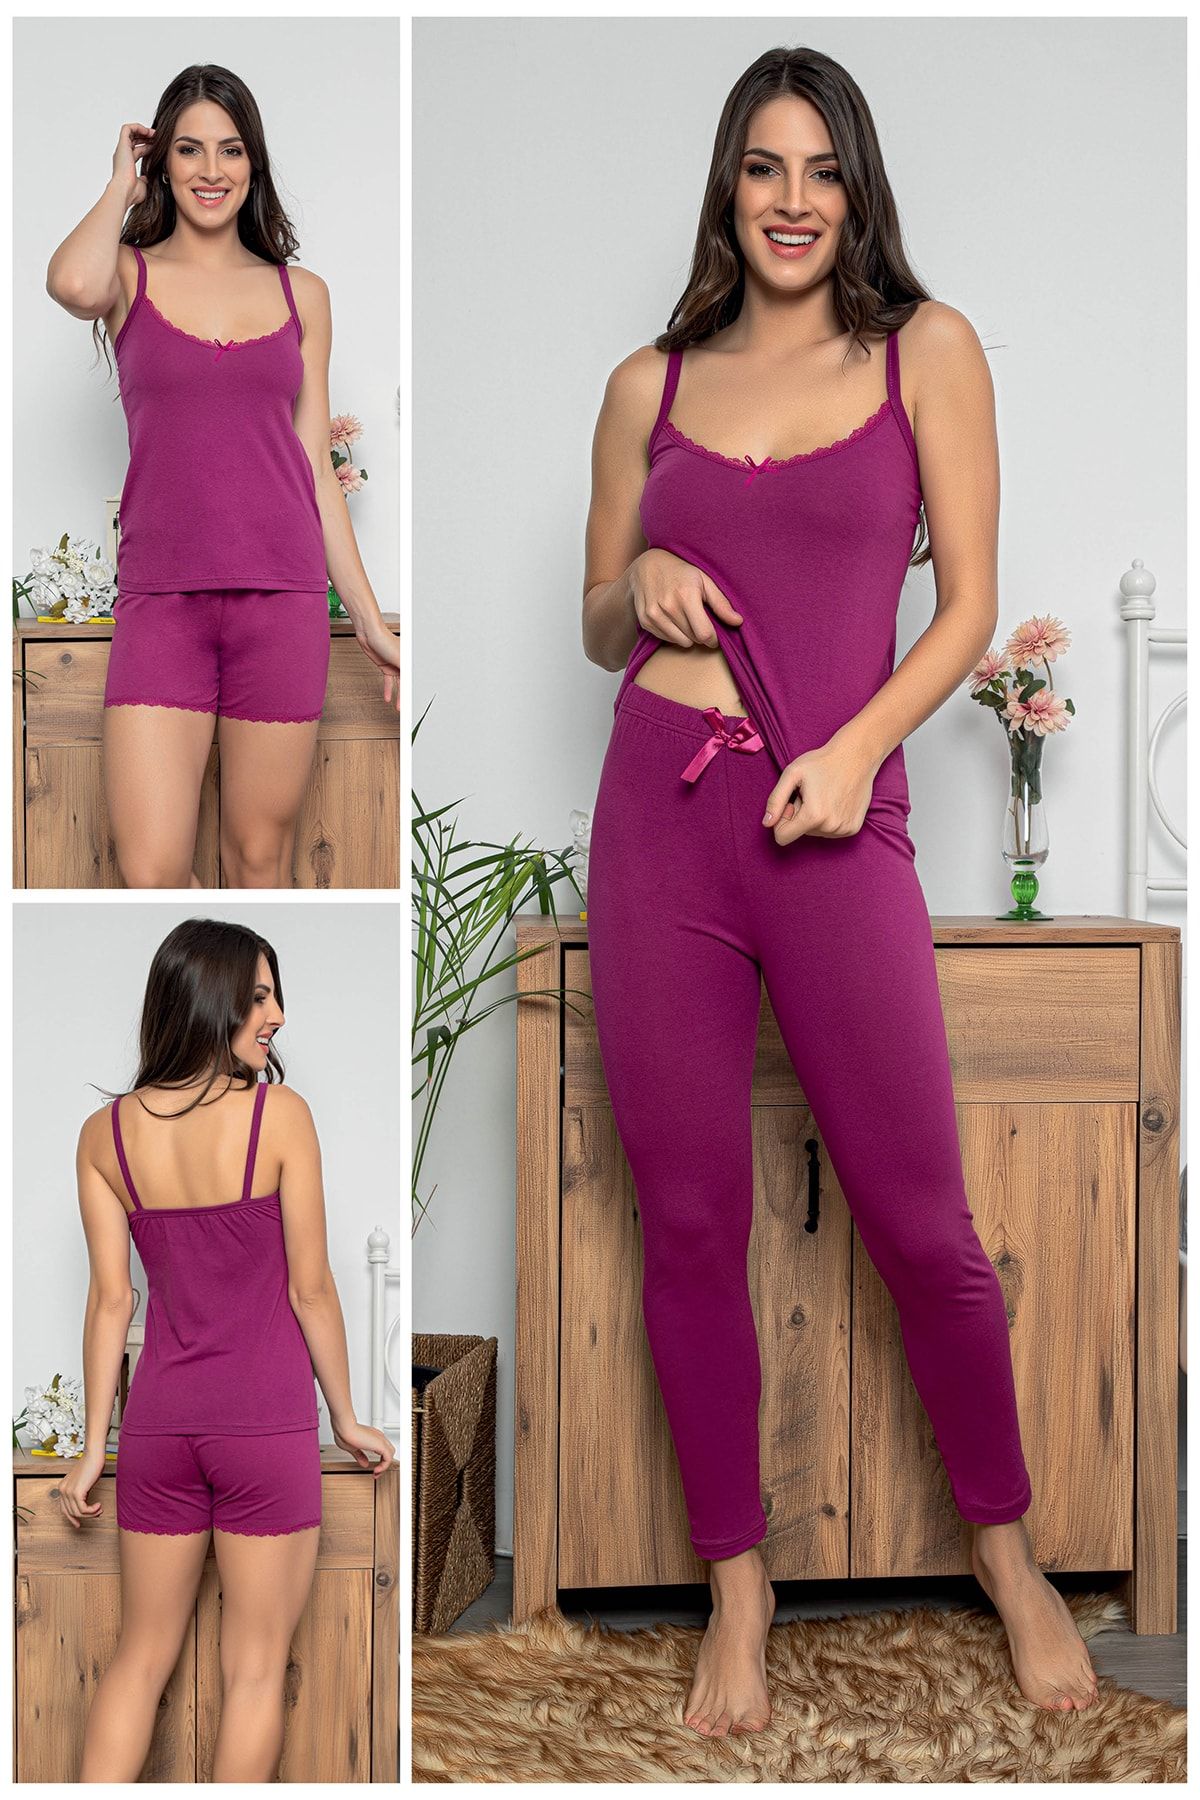 MyBen Kadın Mor Renkli Dantel Detaylı Şortlu Ve Taytlı Pijama Takımı 3'lü Set 75022